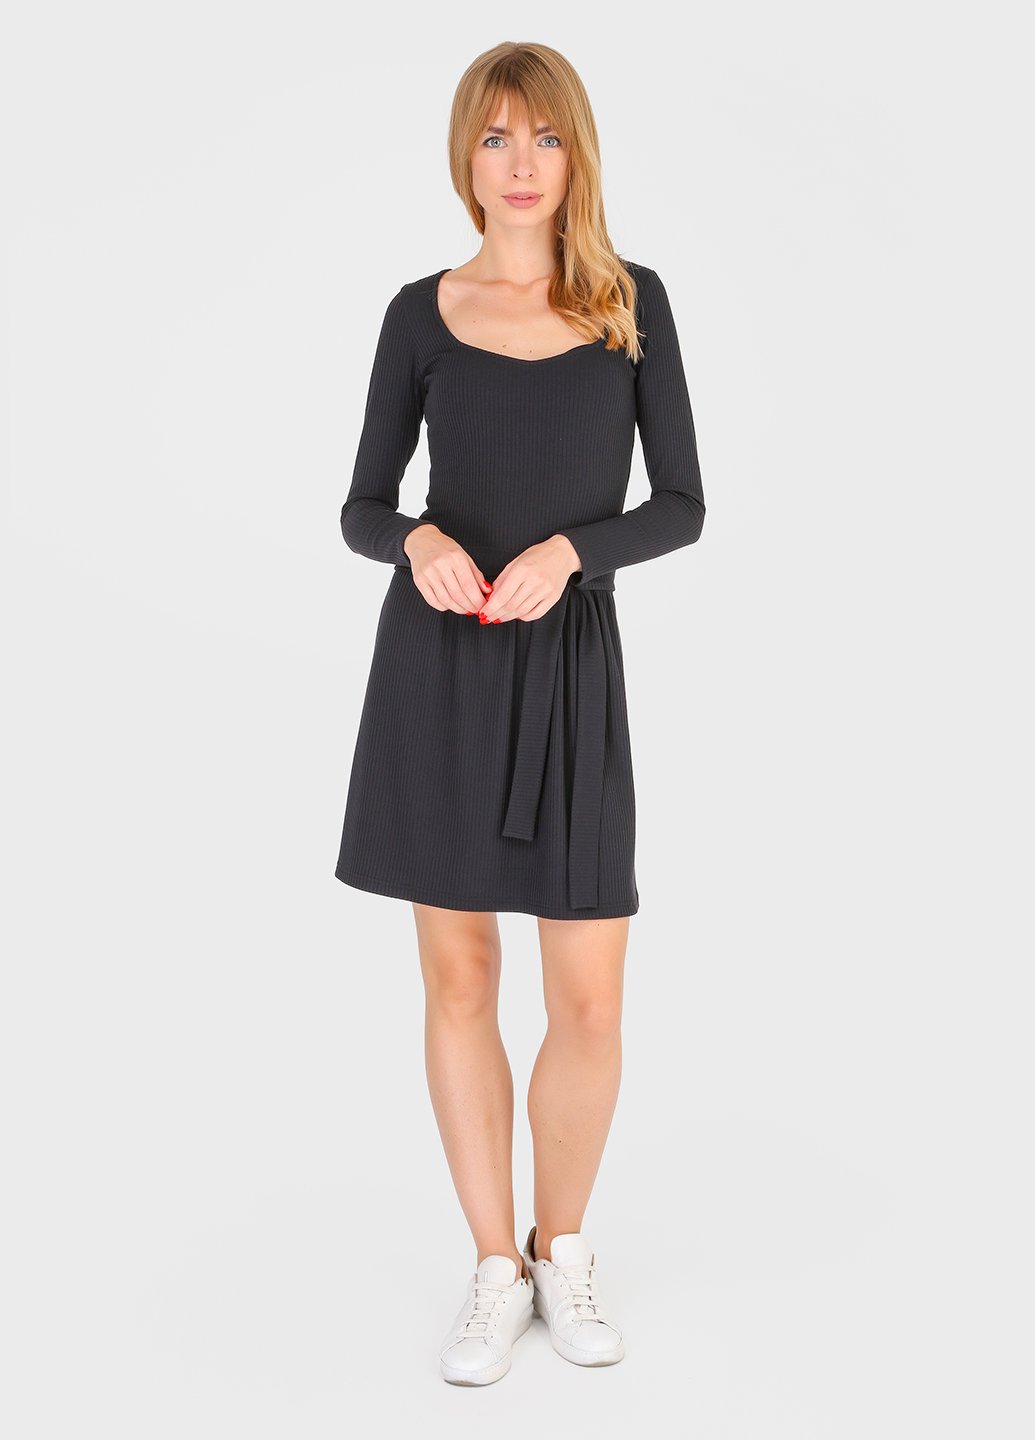 Купить Платье в рубчик Merlini Панамера 700000018 - Черный, 42-44 в интернет-магазине